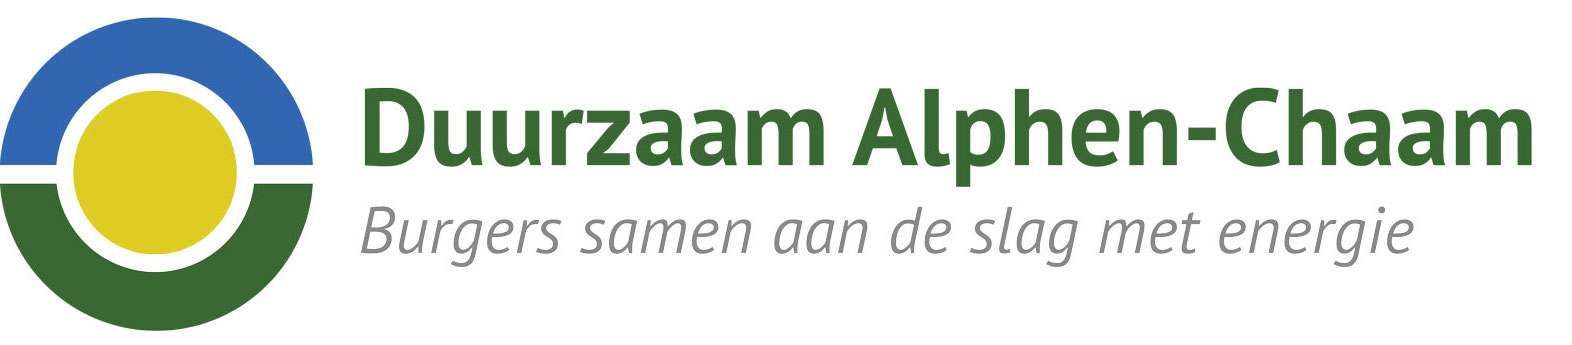 Duurzaam Alphen-Chaam